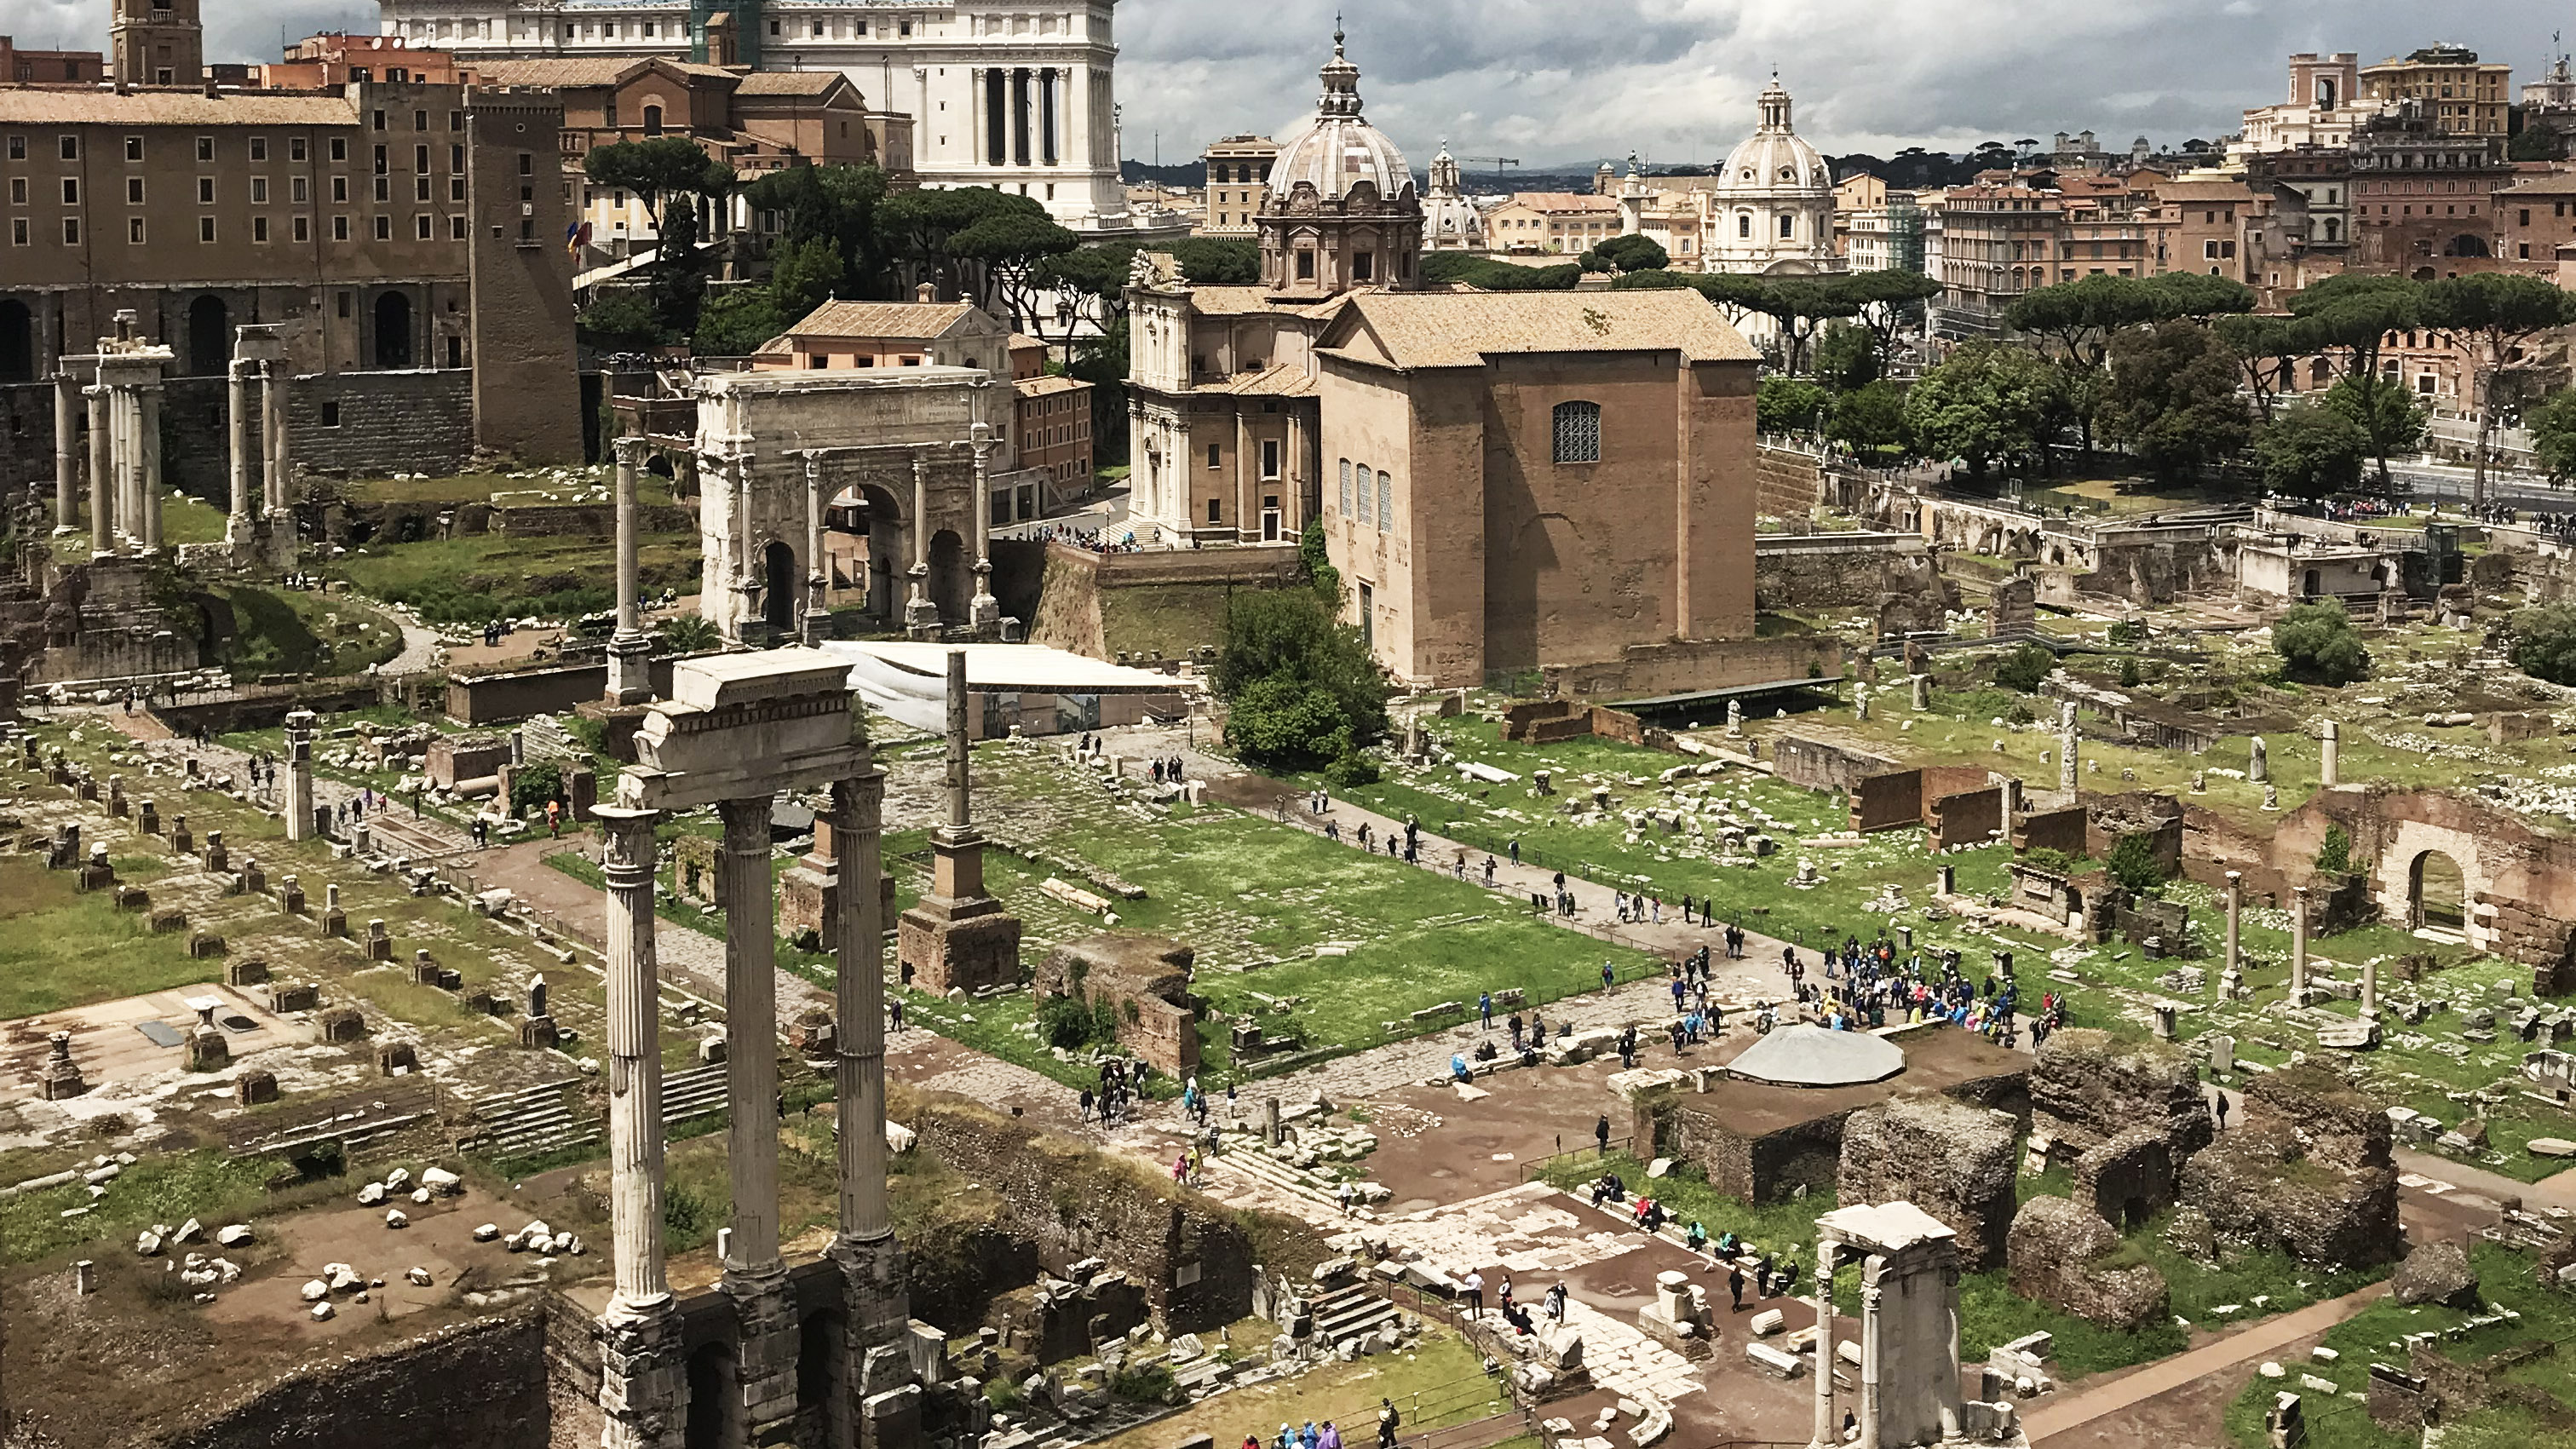 Forum Romanum (Roman Forum) – Introduction